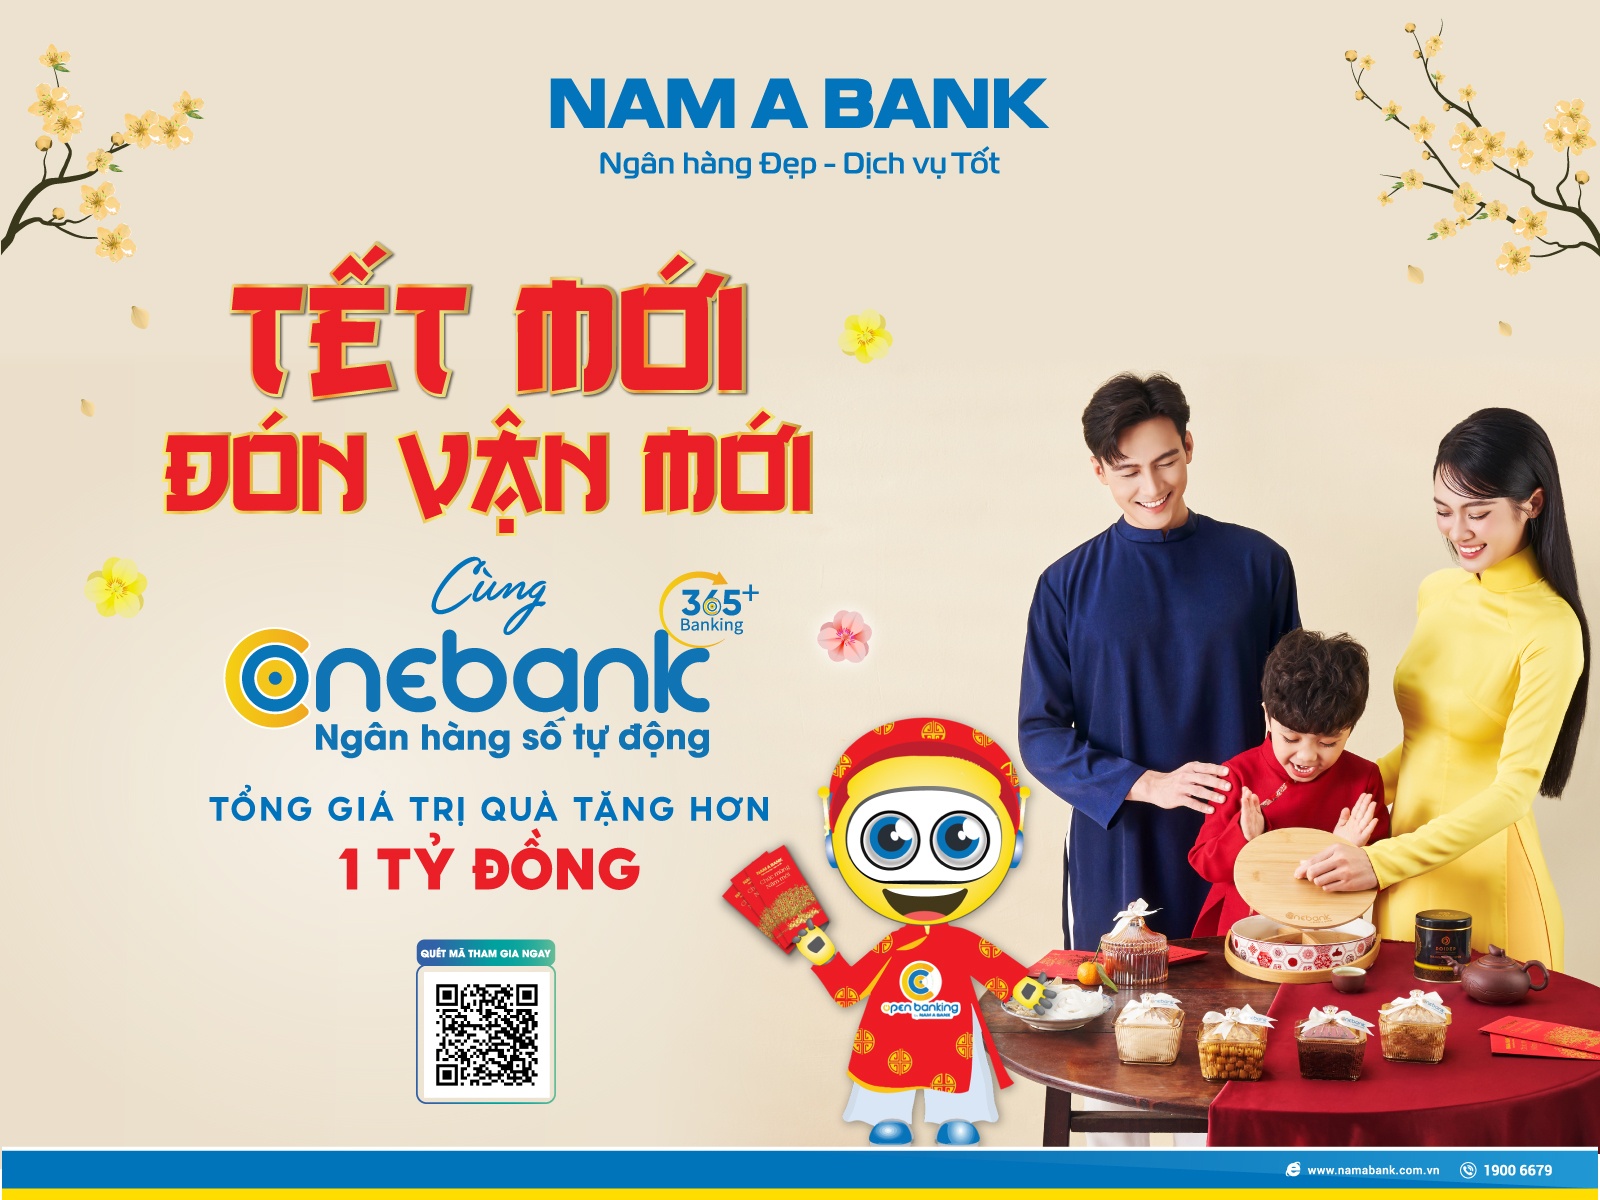 Chương trình khuyến mãi “Tết mới – Đón vận mới” được triển khai tại ONEBANK  by Nam A Bank trên toàn hệ thống.